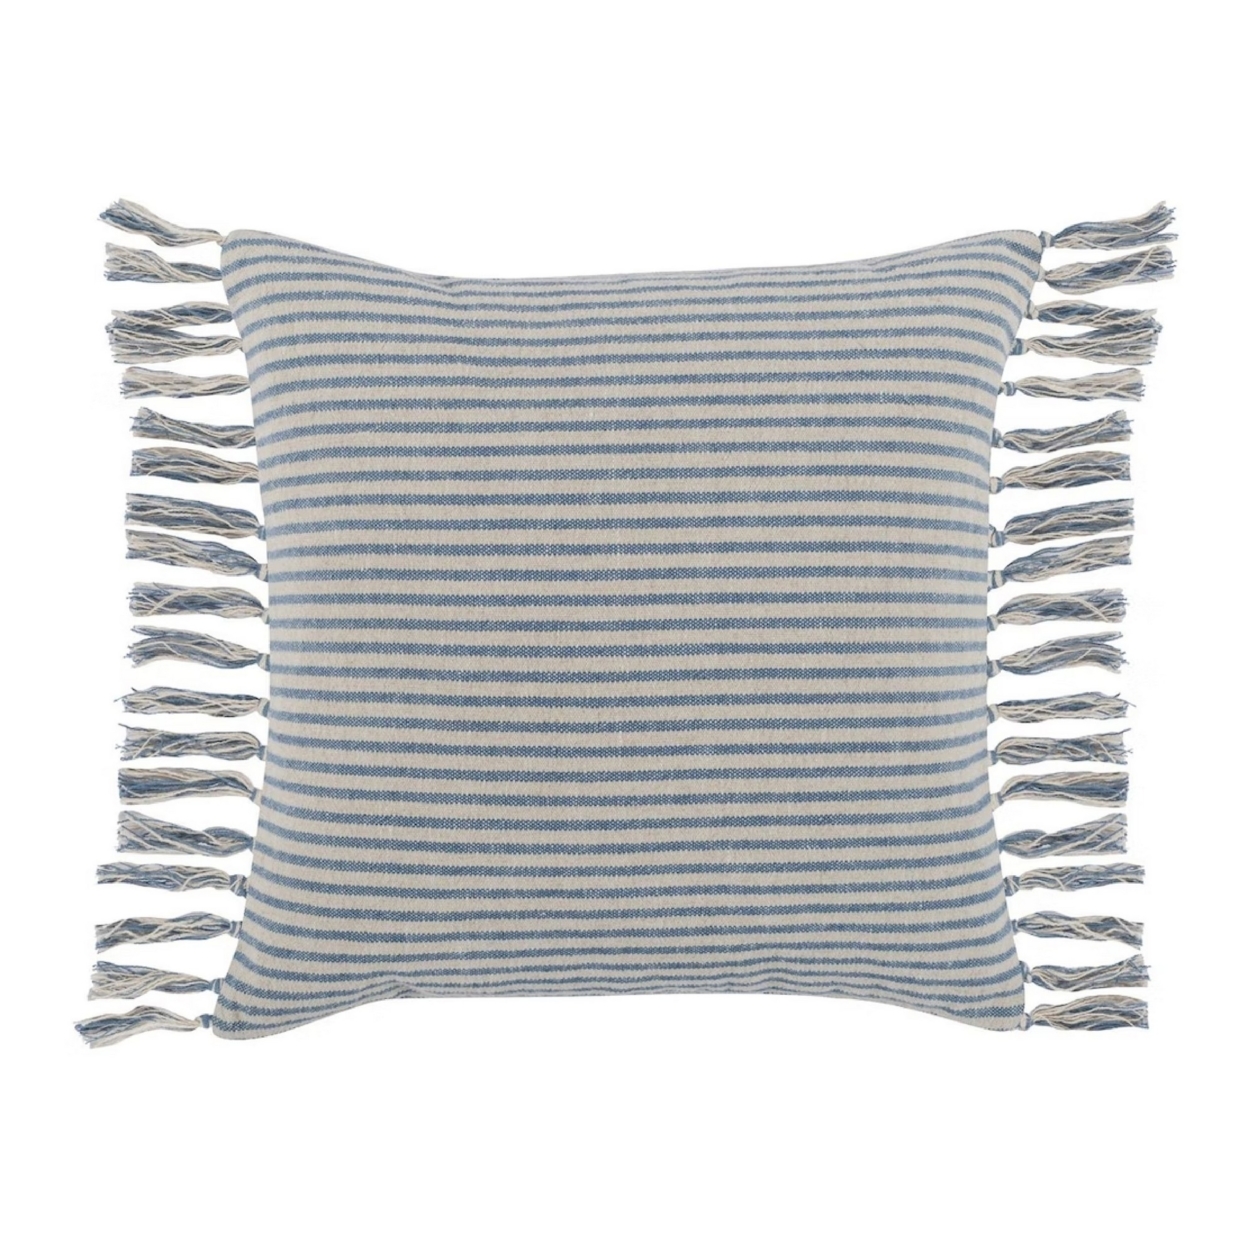 20 X 20 Modern Throw Pillow, Cotton Linen, Woven Stripes, Tassels, Blue, Saltoro Sherpi